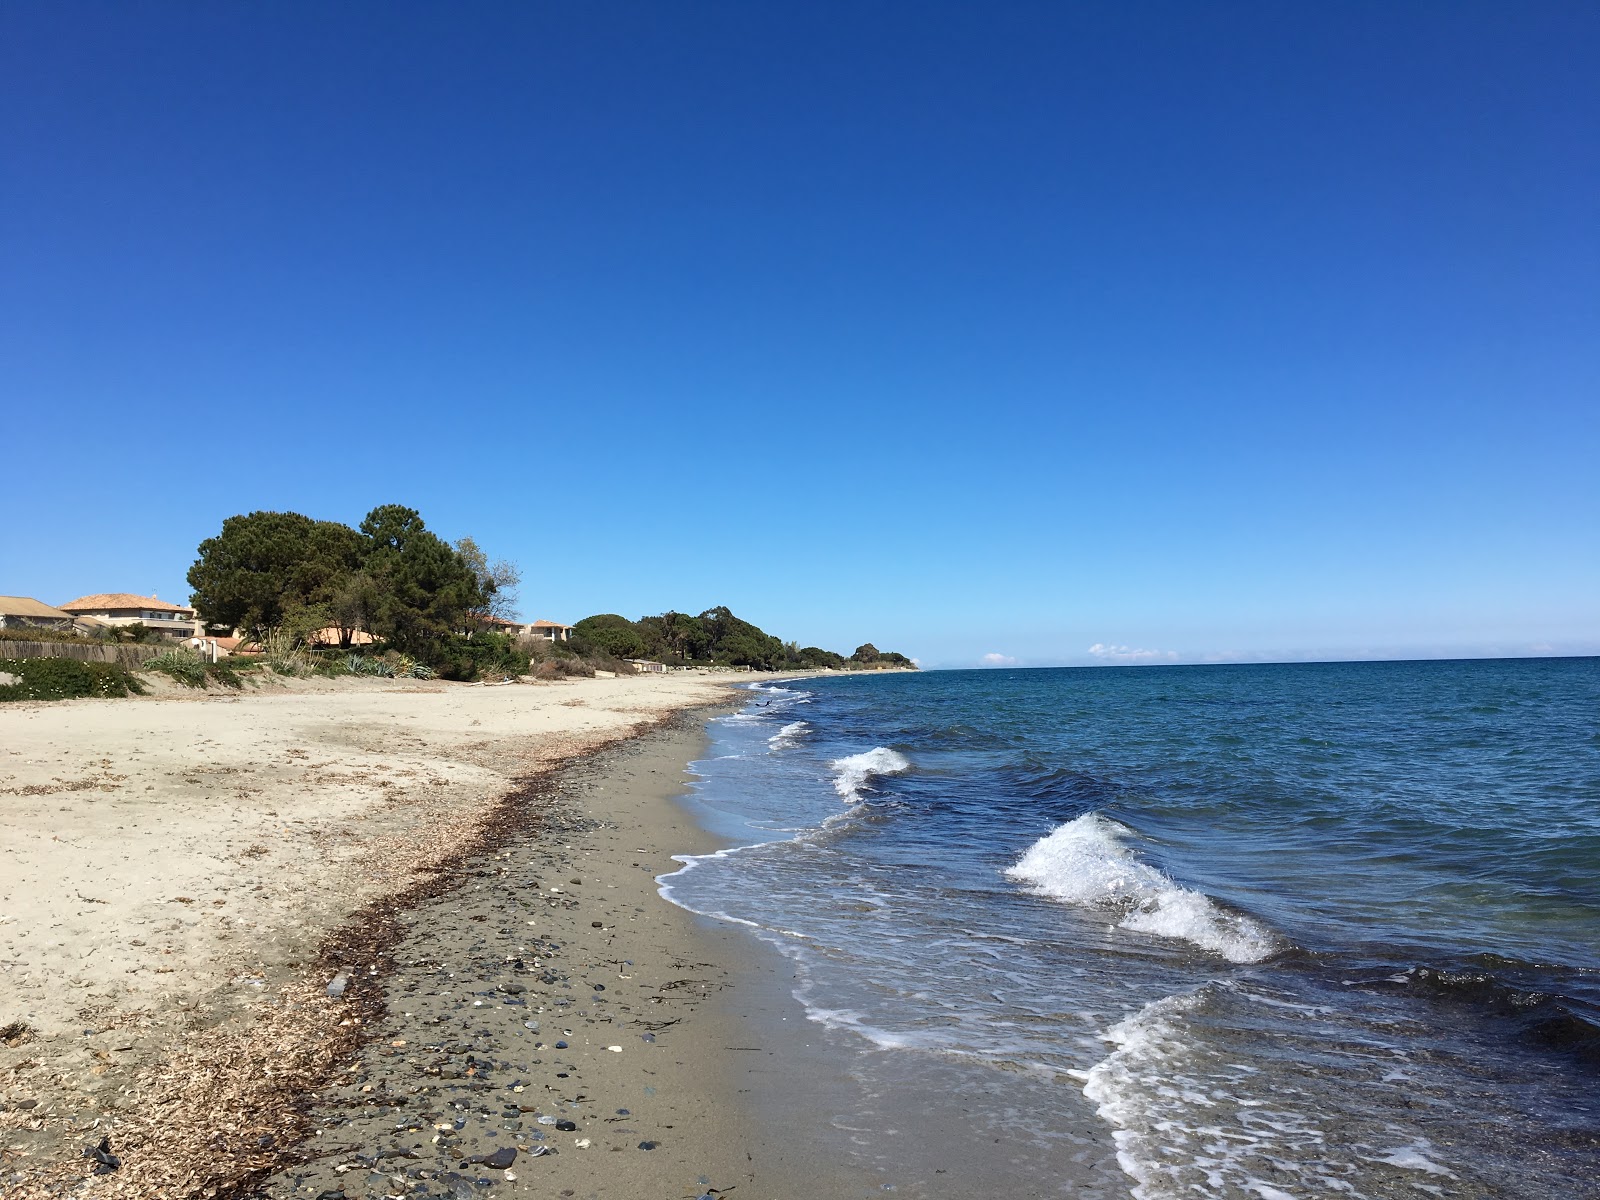 Fotografie cu Ponticchio beach cu o suprafață de apa pură turcoaz